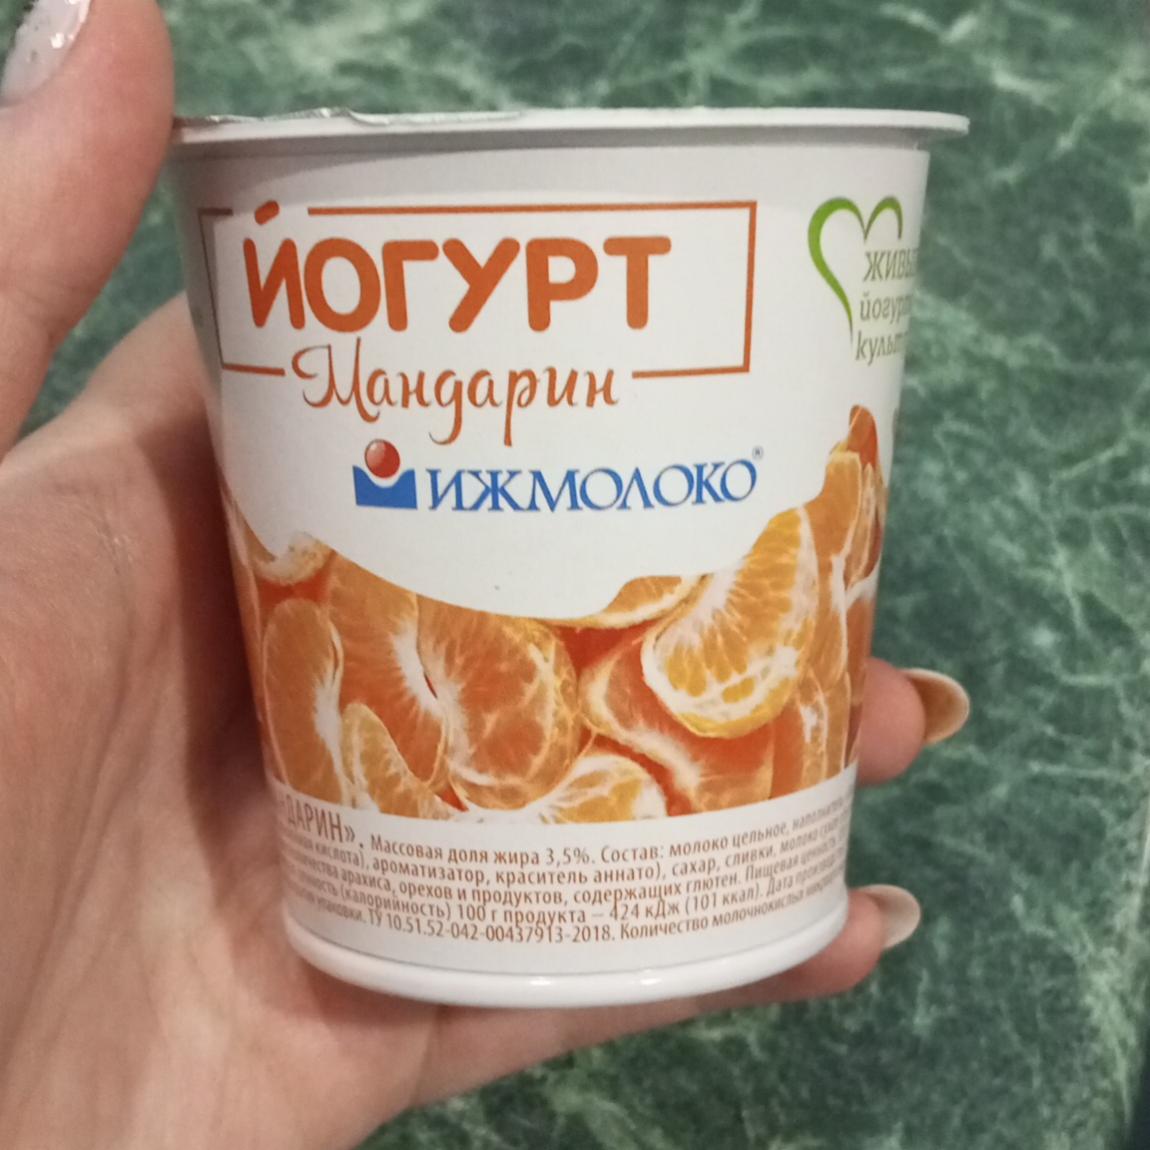 Фото - йогурт мандарин Ижмолоко